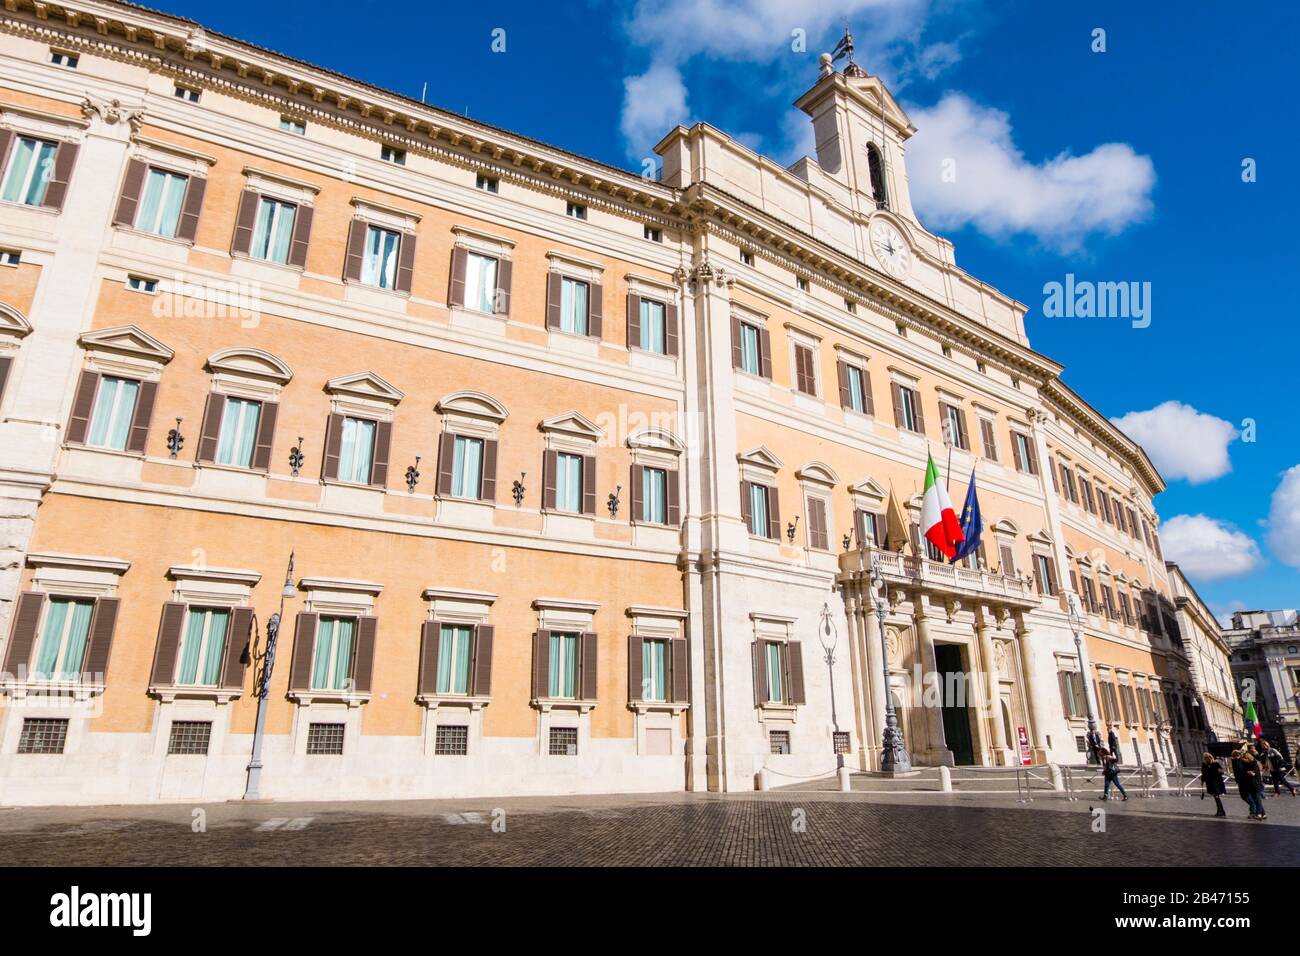 Palazzo Montecitorio, Piazza di Monte Citorio, centro storico, Rome, Italie Banque D'Images